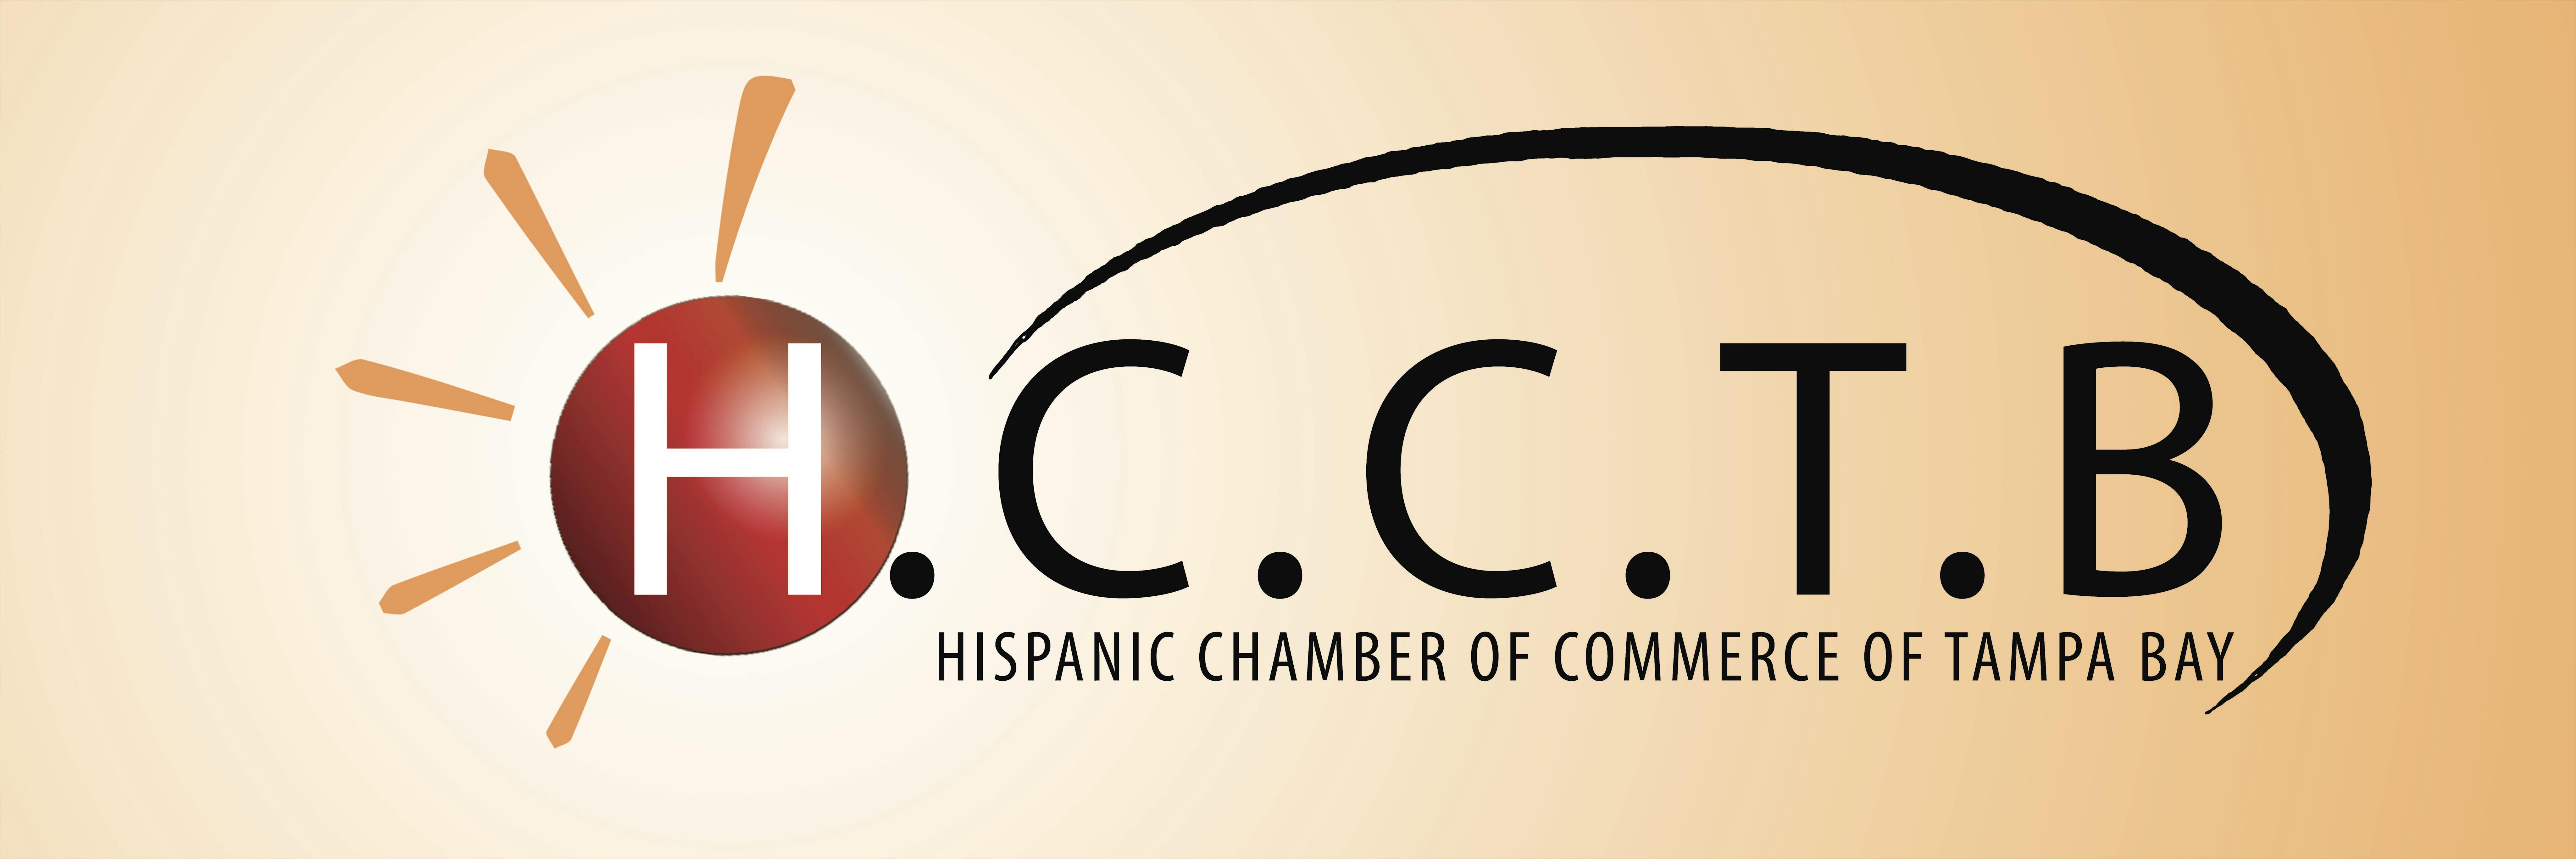 Hispanic Chamber of Commerce of Tampa Bay